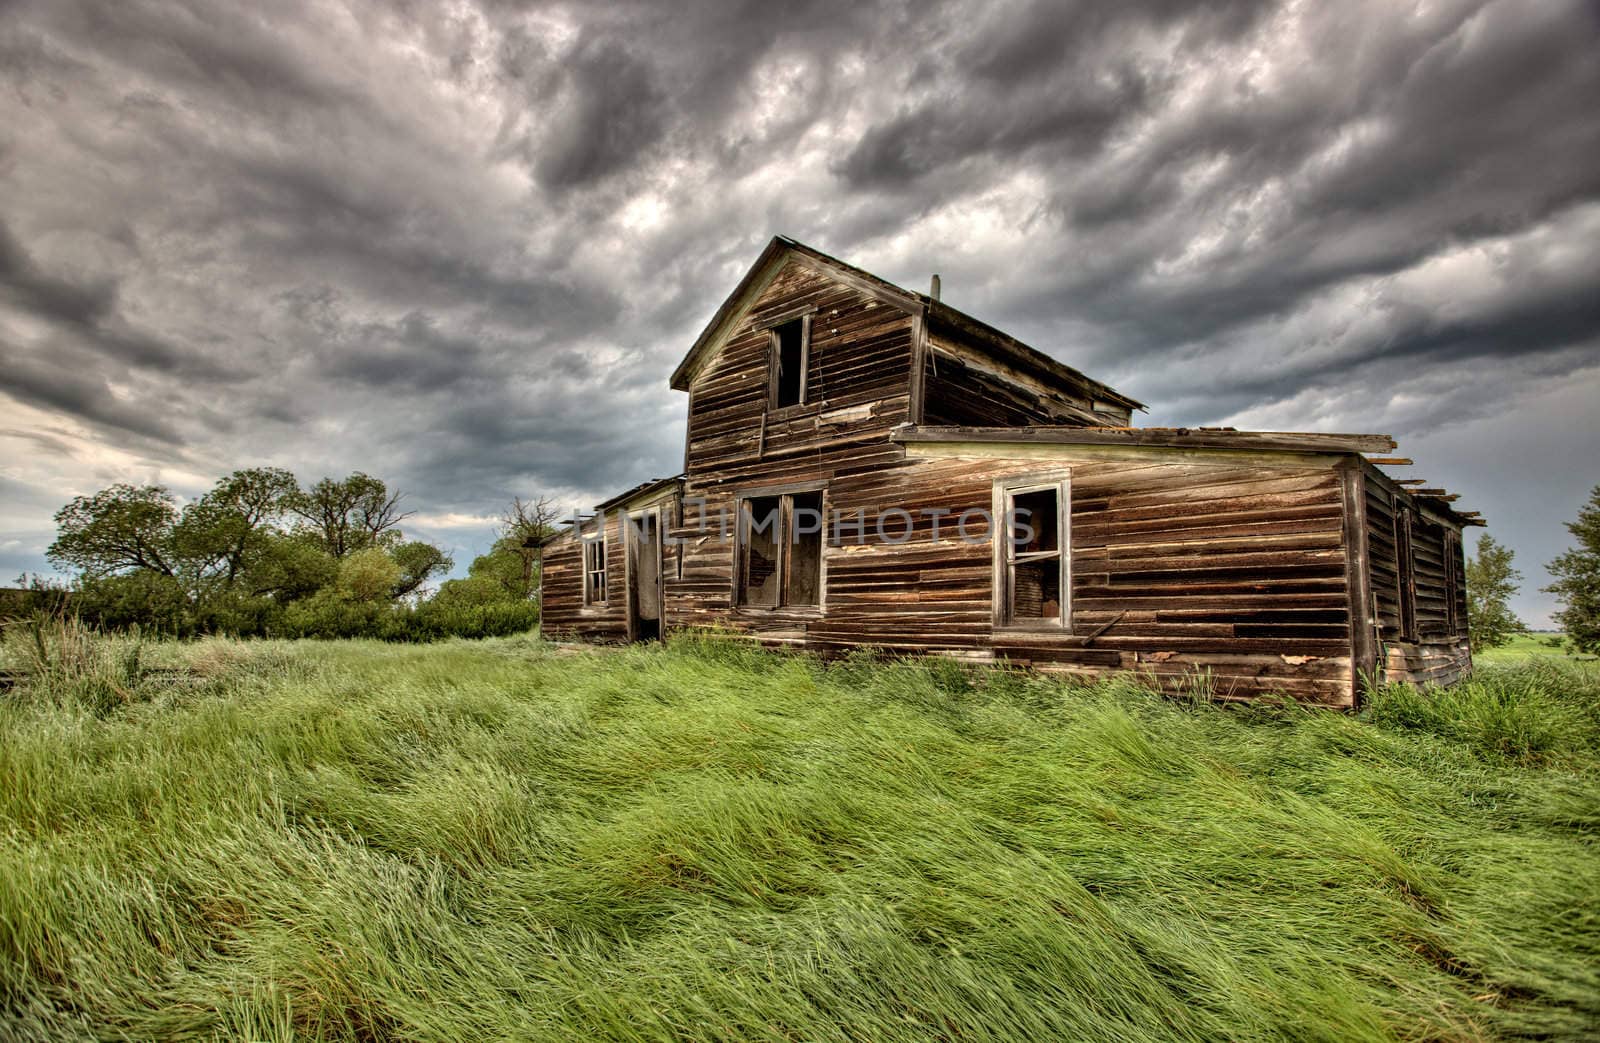 Abandoned Farm Buildings Saskatchewan by pictureguy